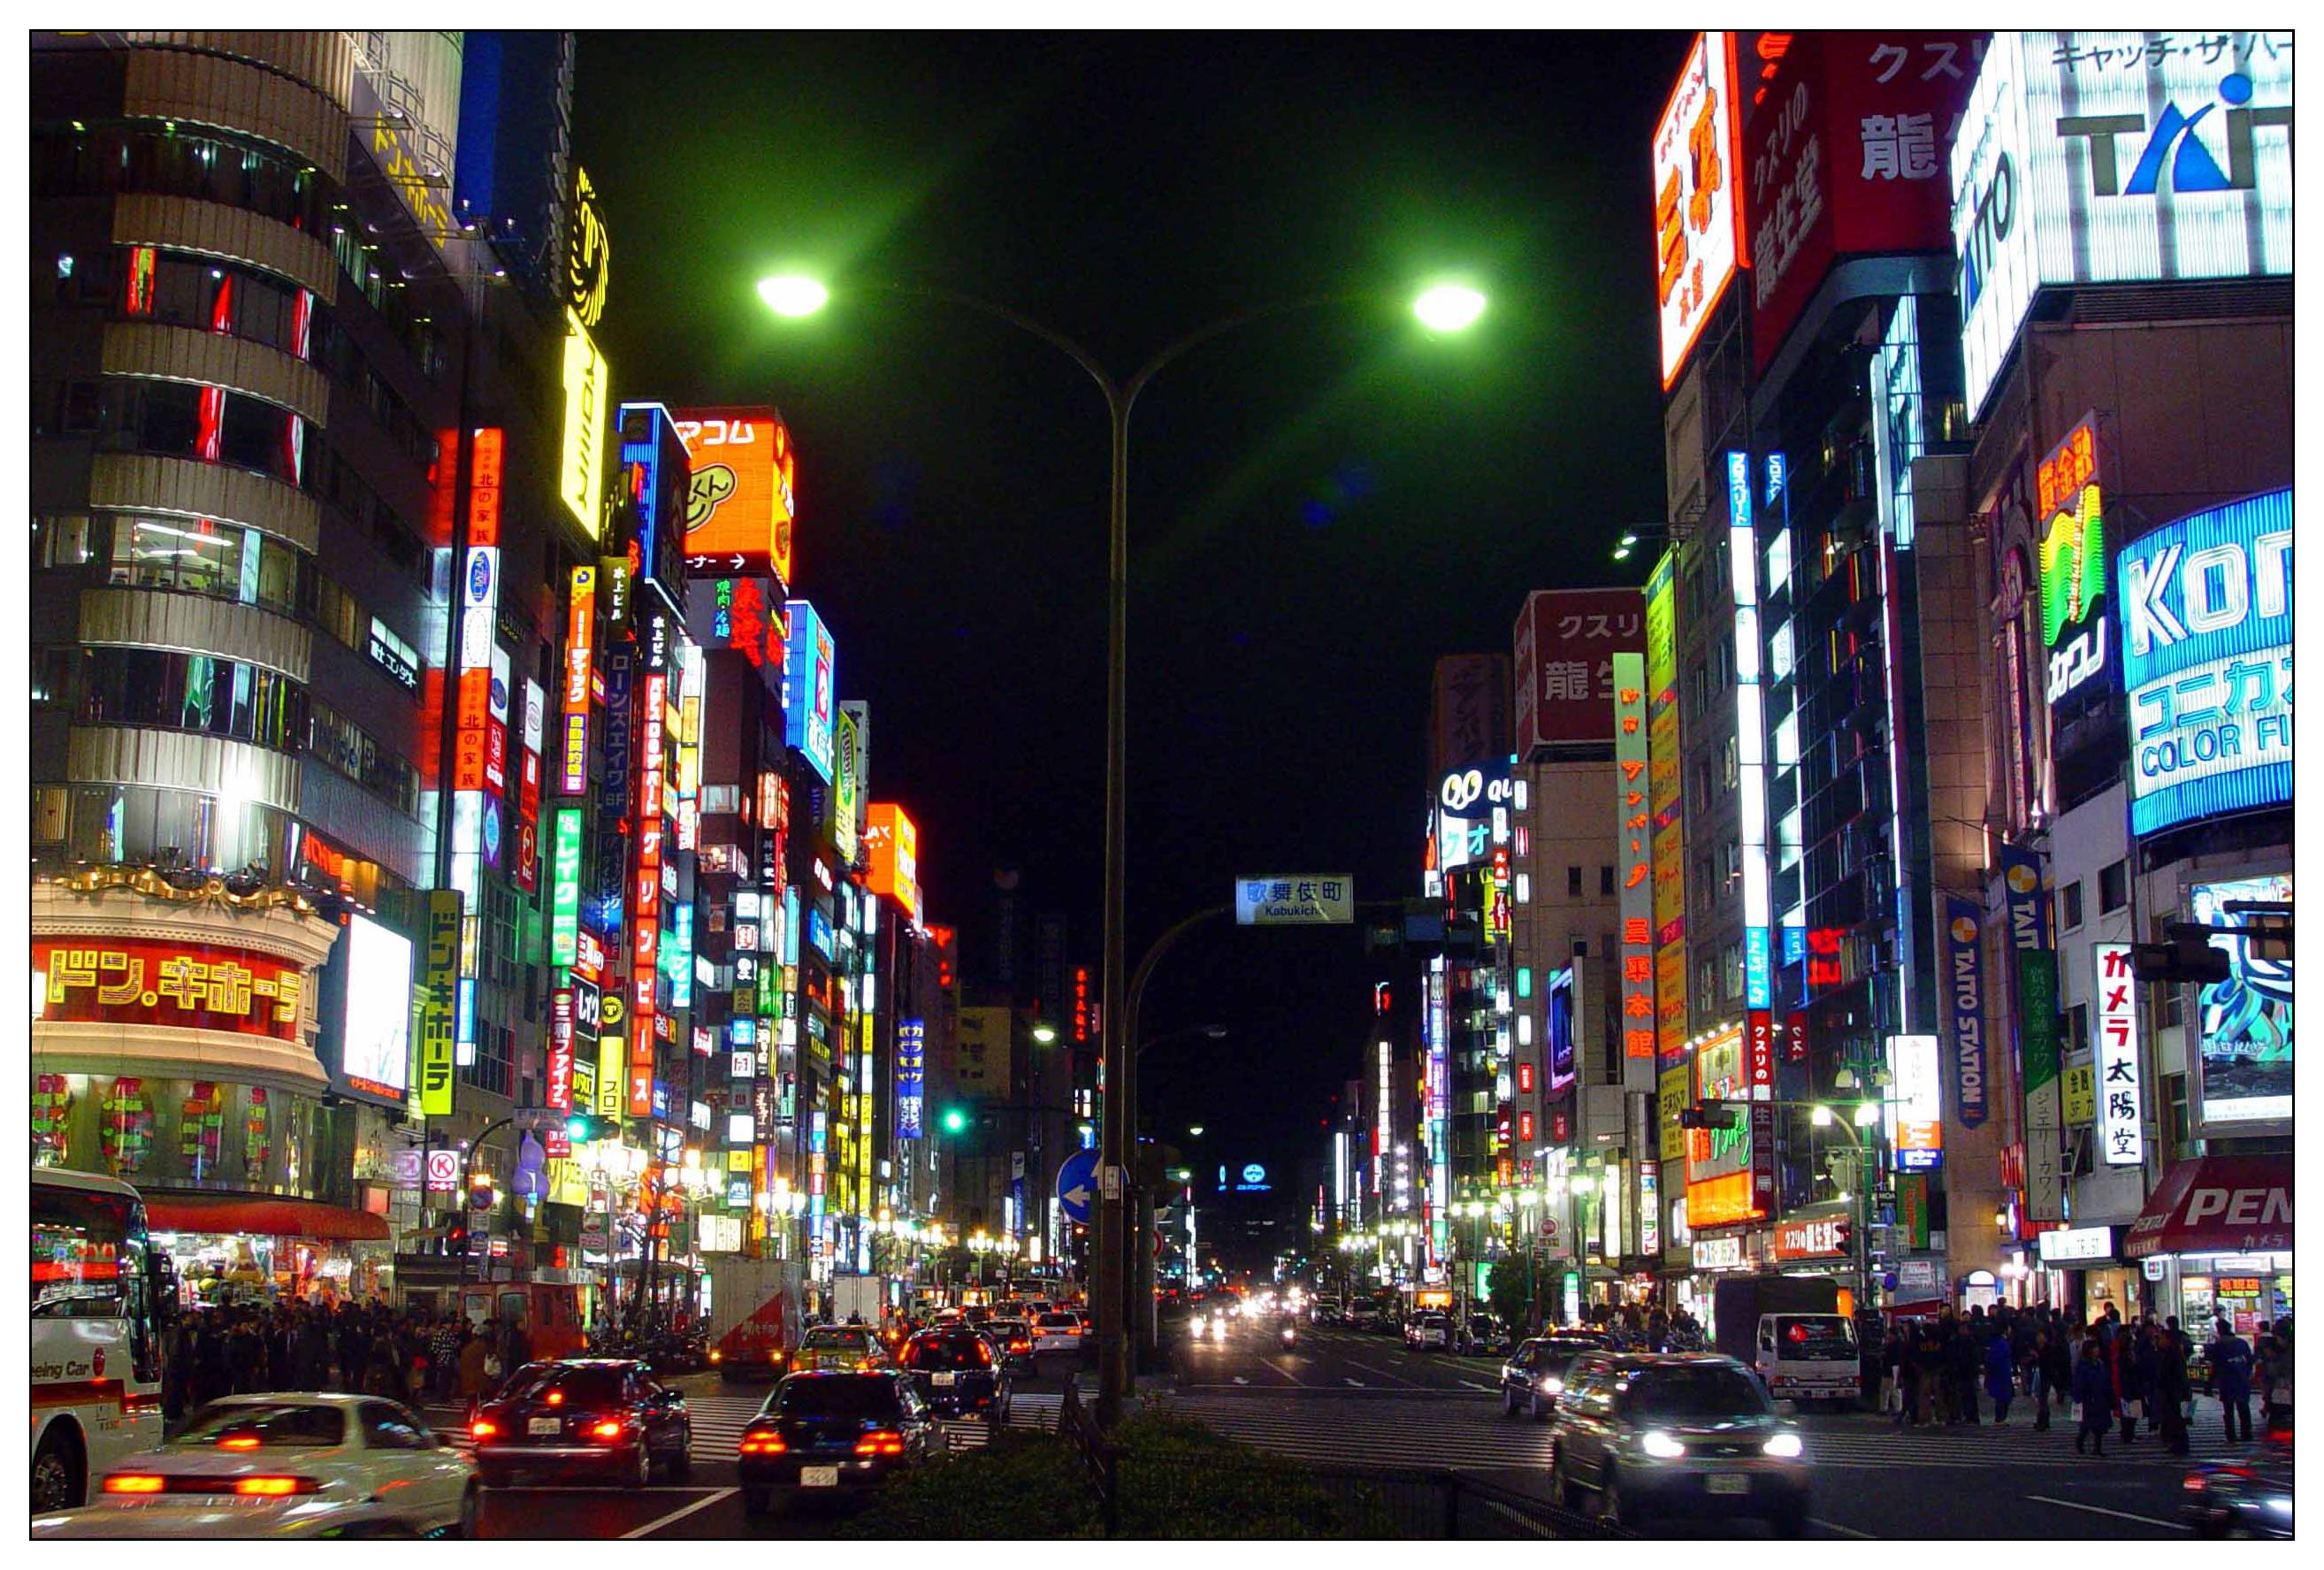 日本街道风景图片高清图片